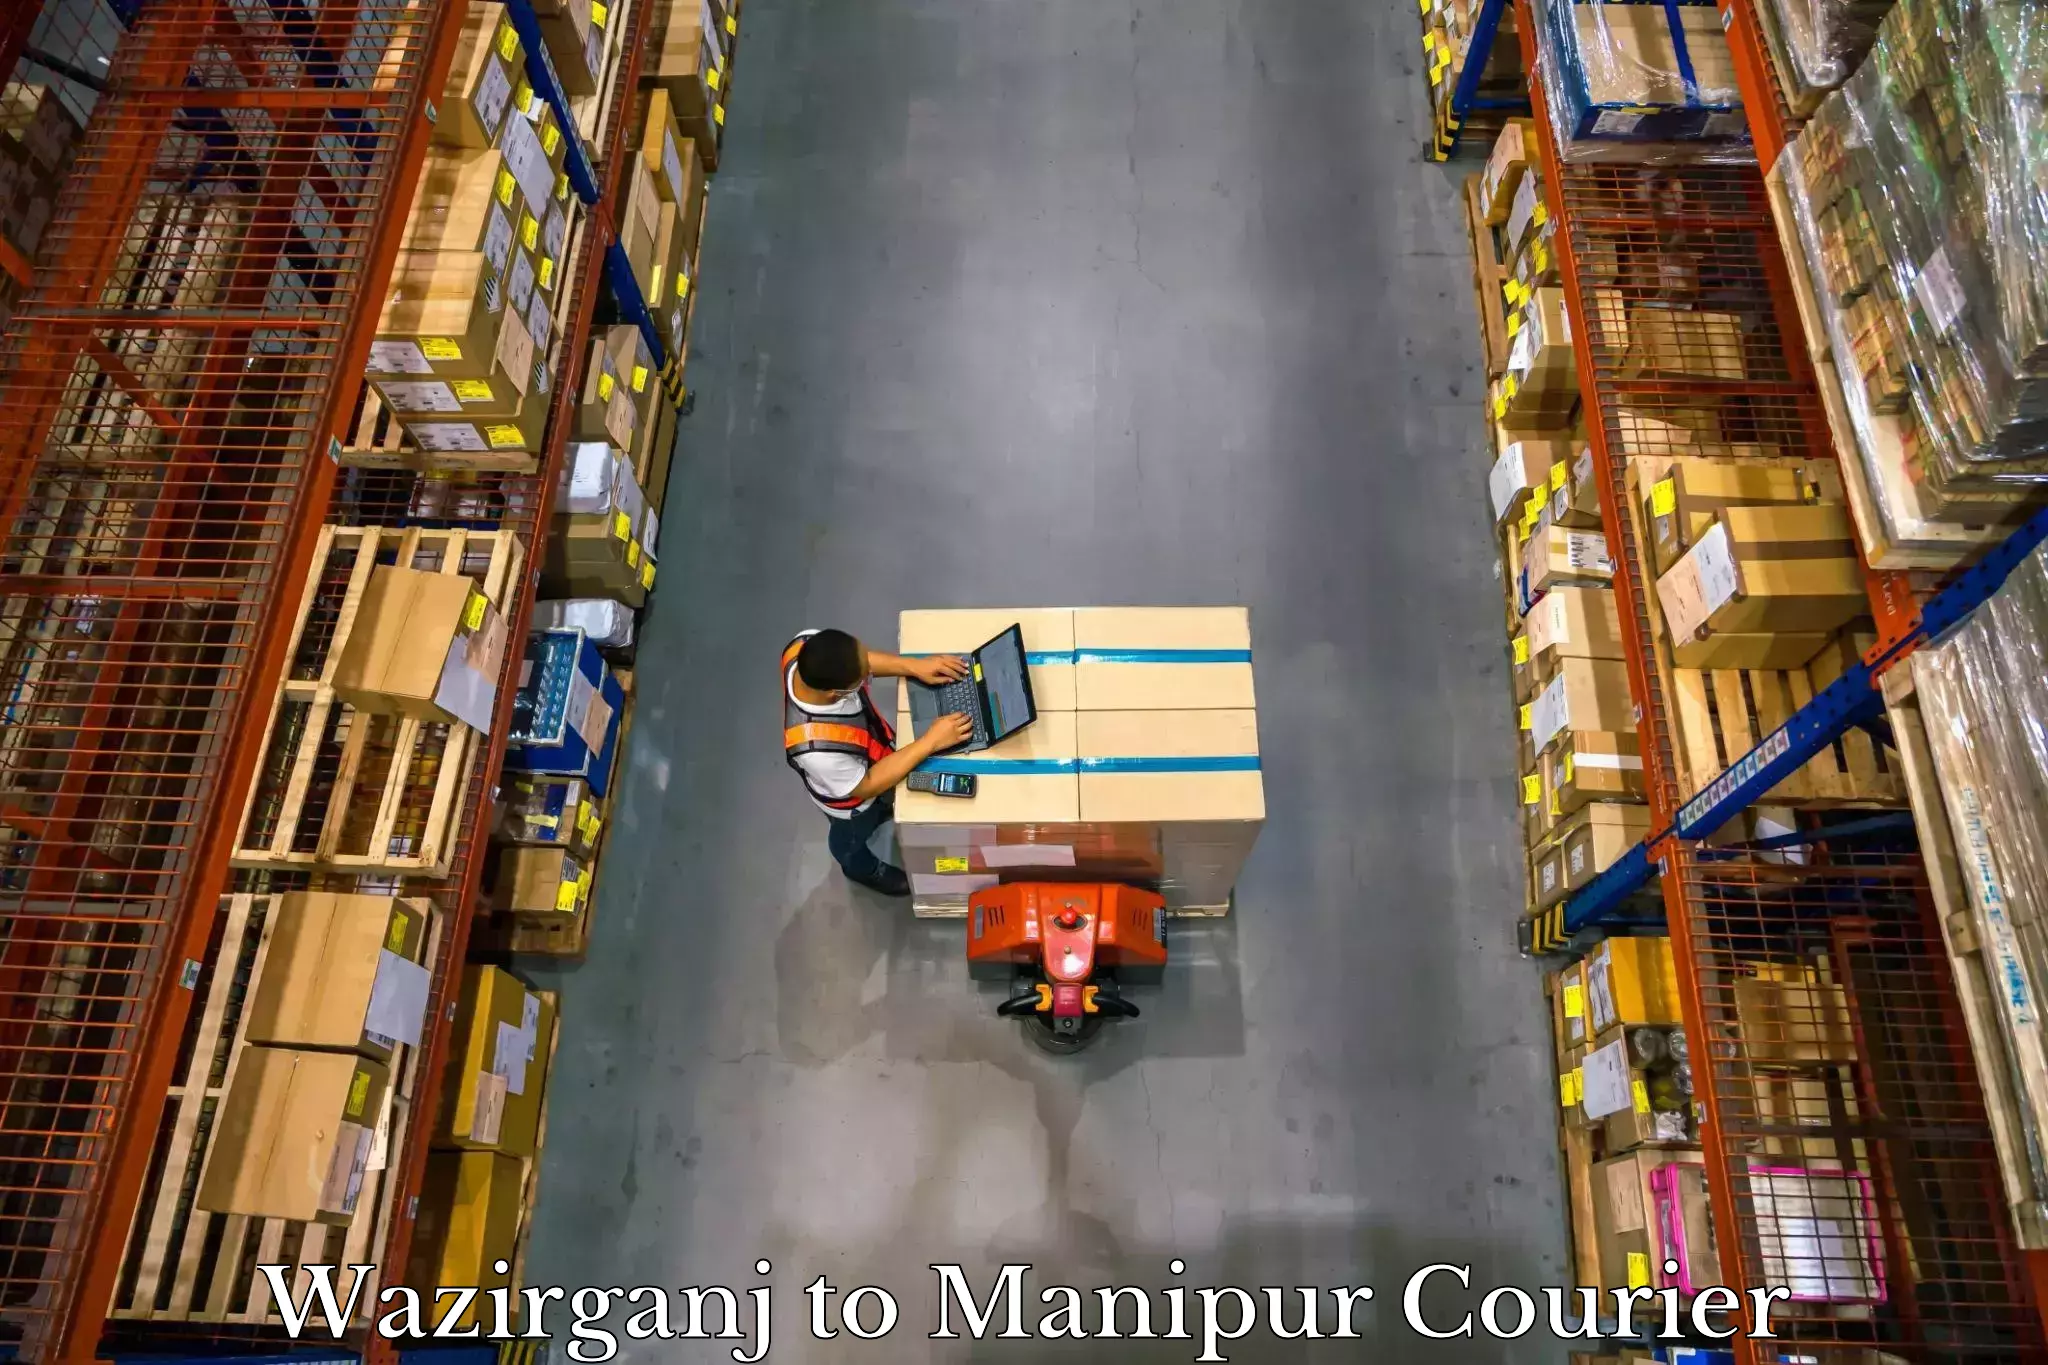 Baggage transport network Wazirganj to Manipur